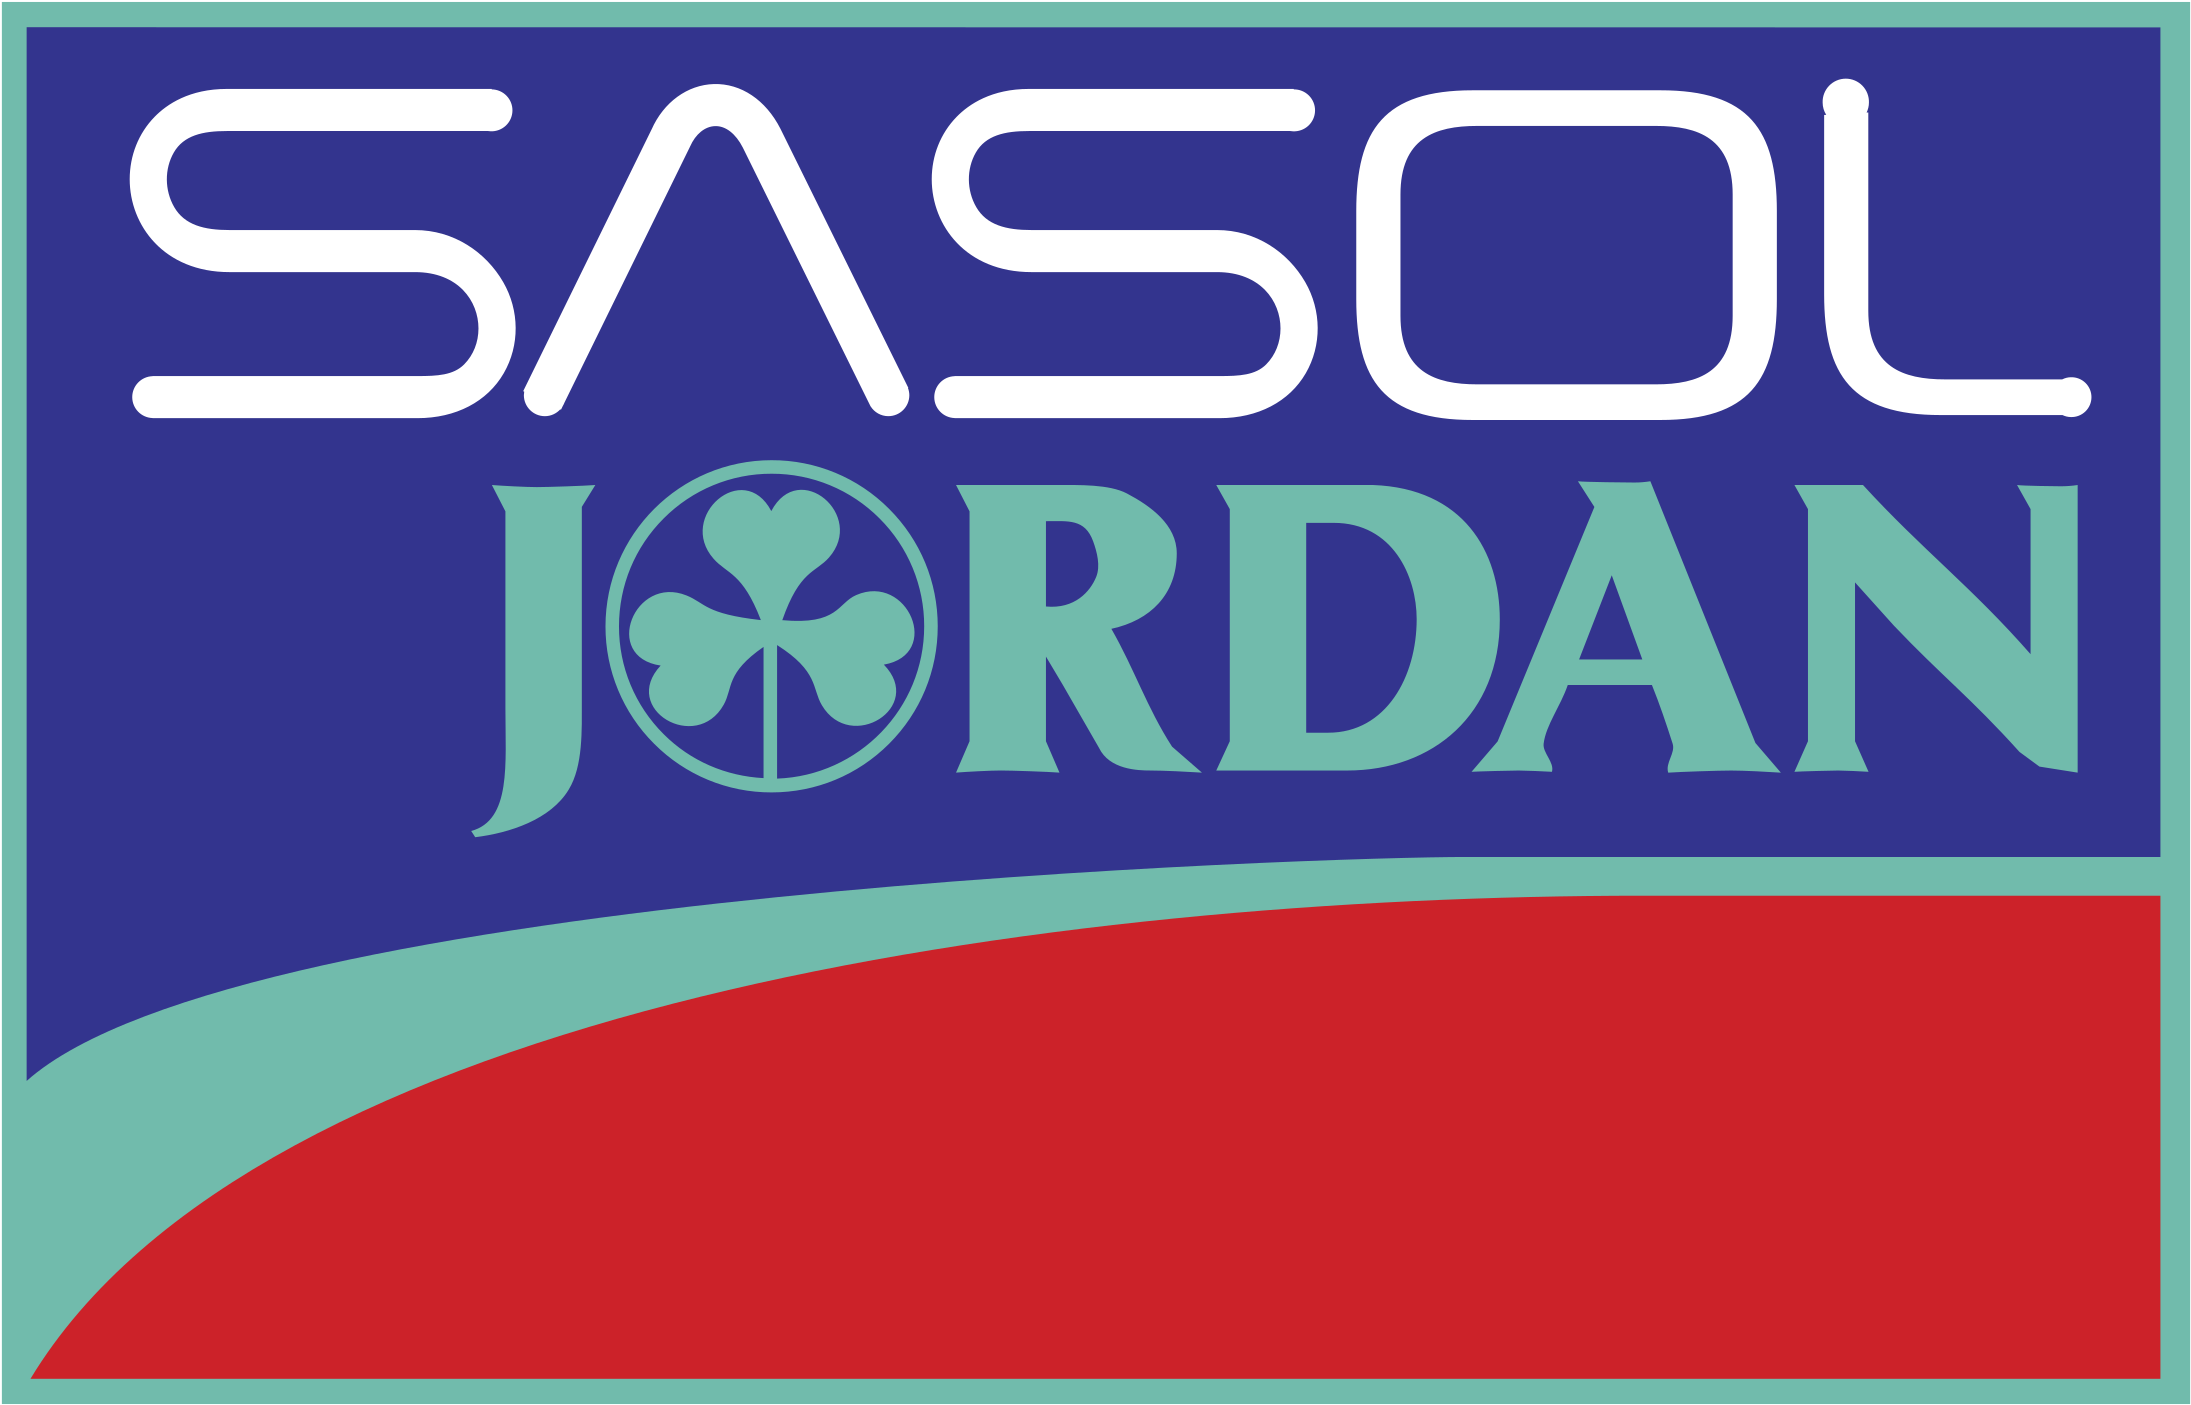 Sasol Jordan F1 Logo Png Transparent - Jordan F1 Logo Clipart (2400x2400), Png Download